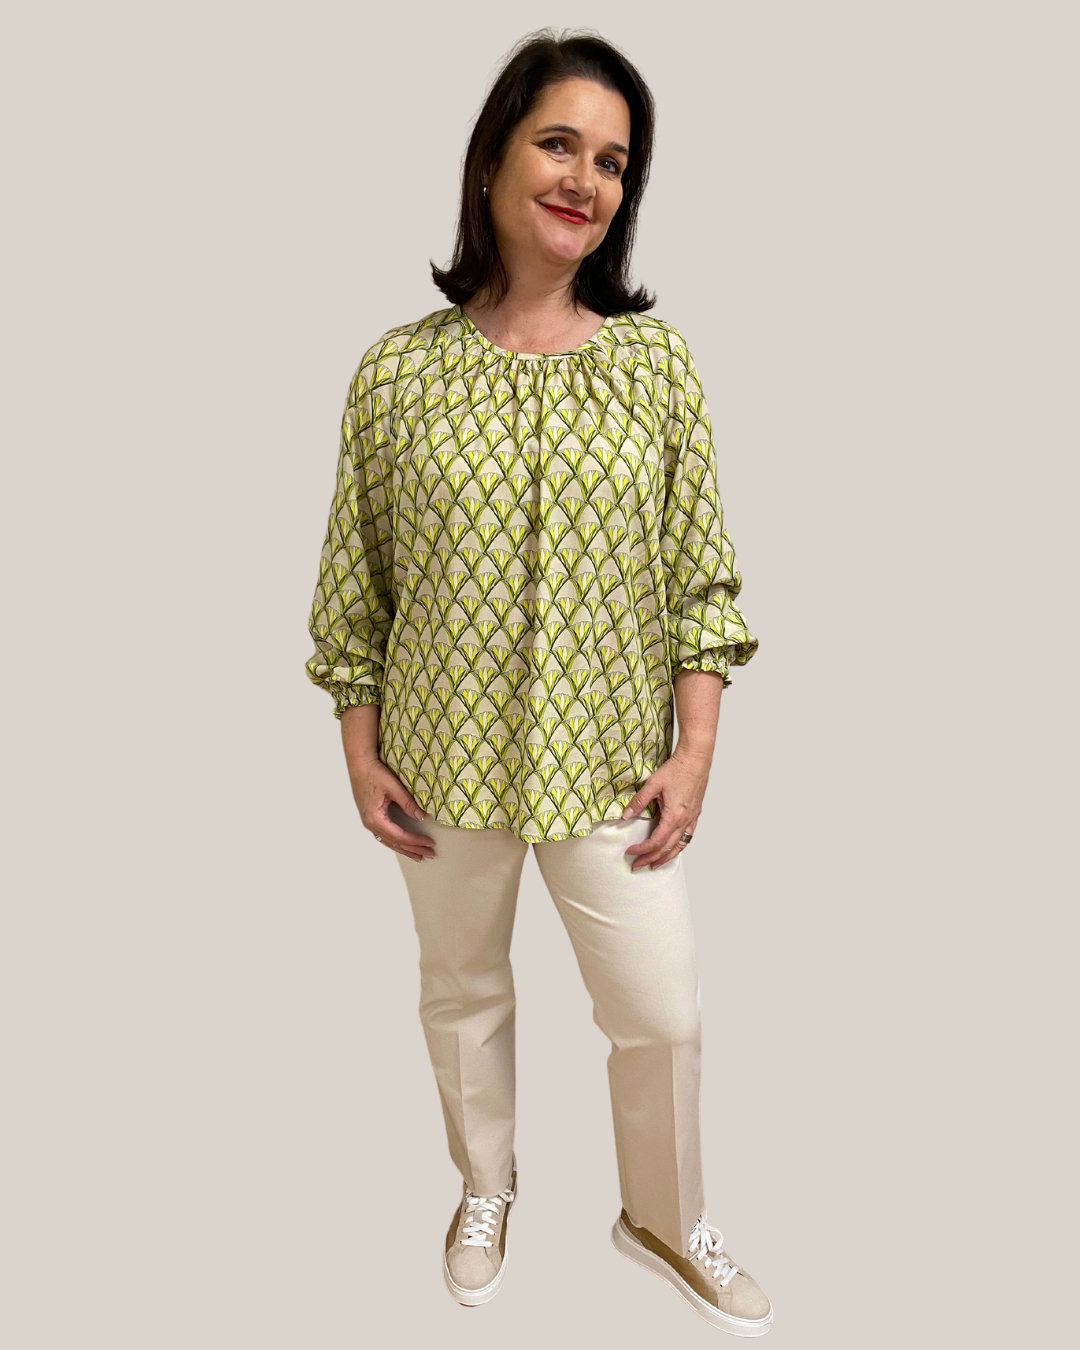 Gemusterte Viskose-Bluse in leichter A-Form mit femininen Details